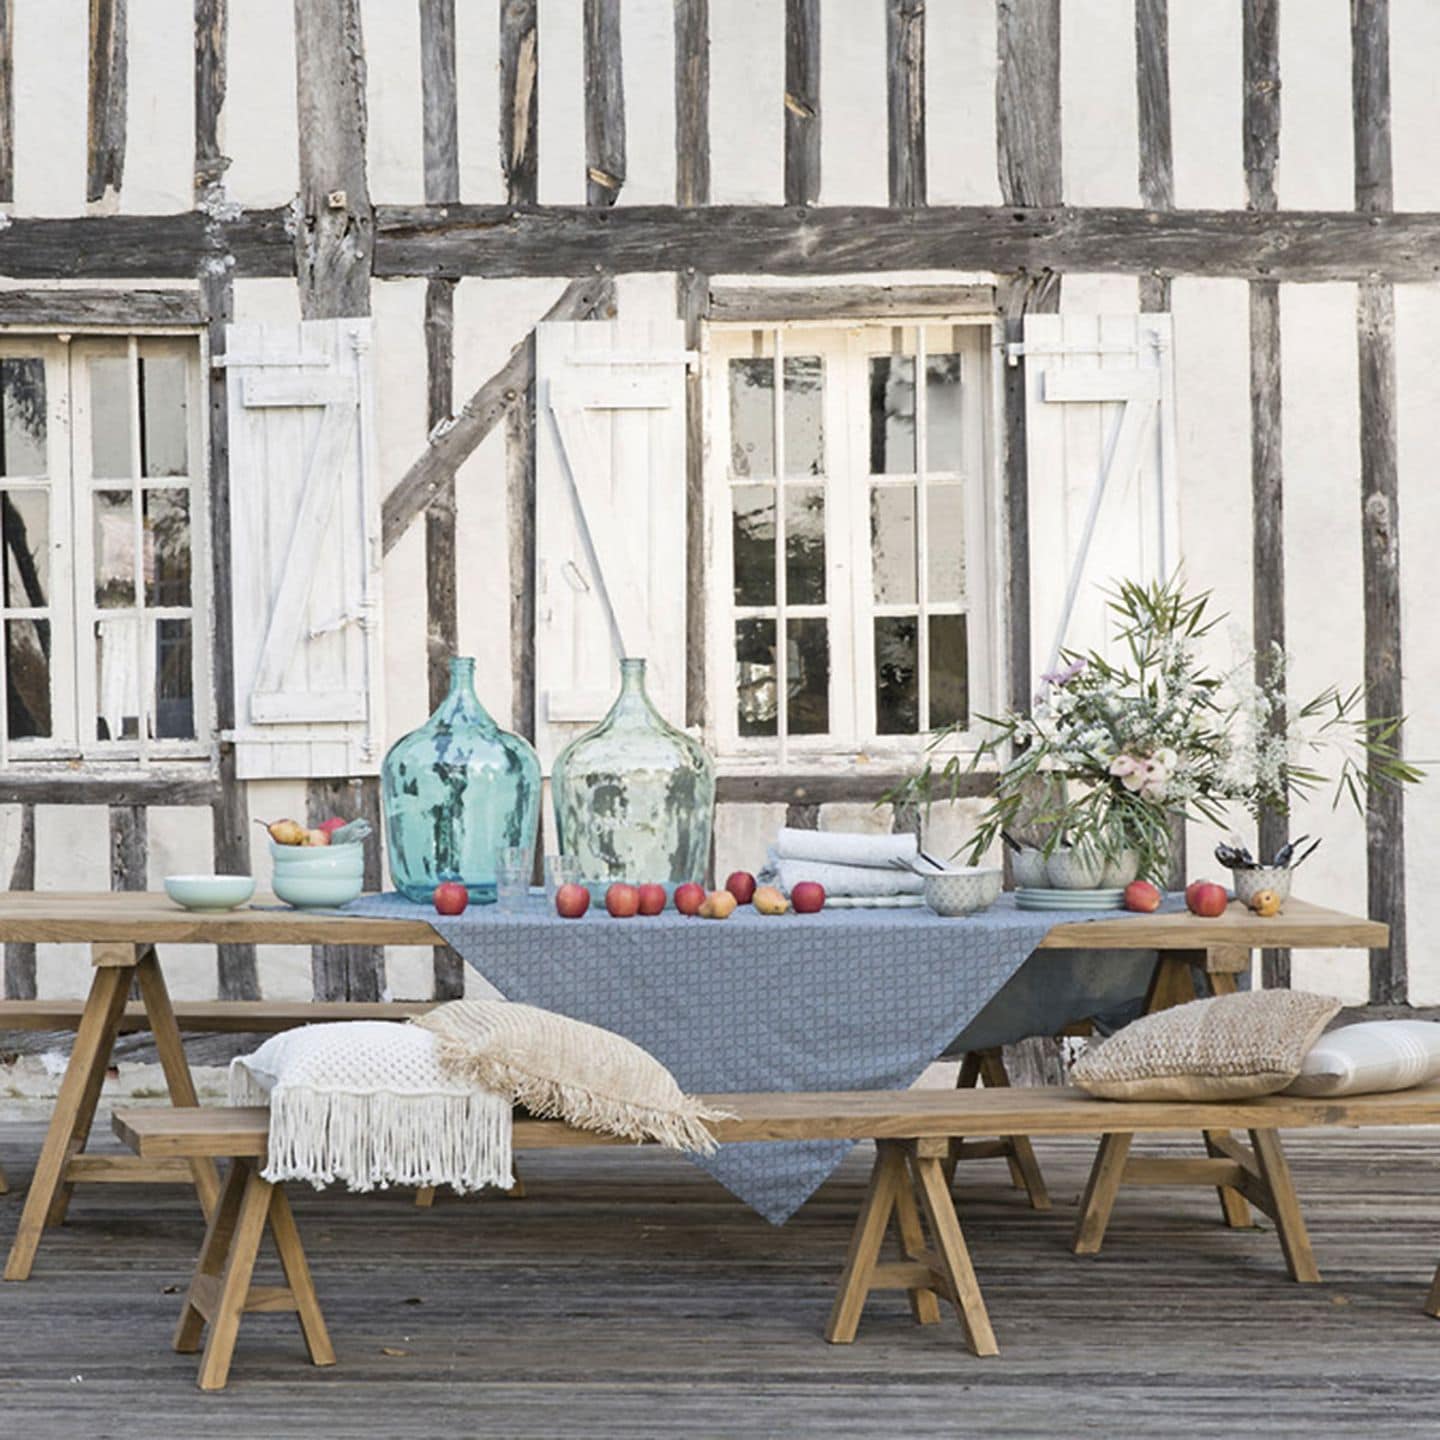 GArtenmöbel: Gartenbank und GArtentisch aus Holz von Maison du Monde